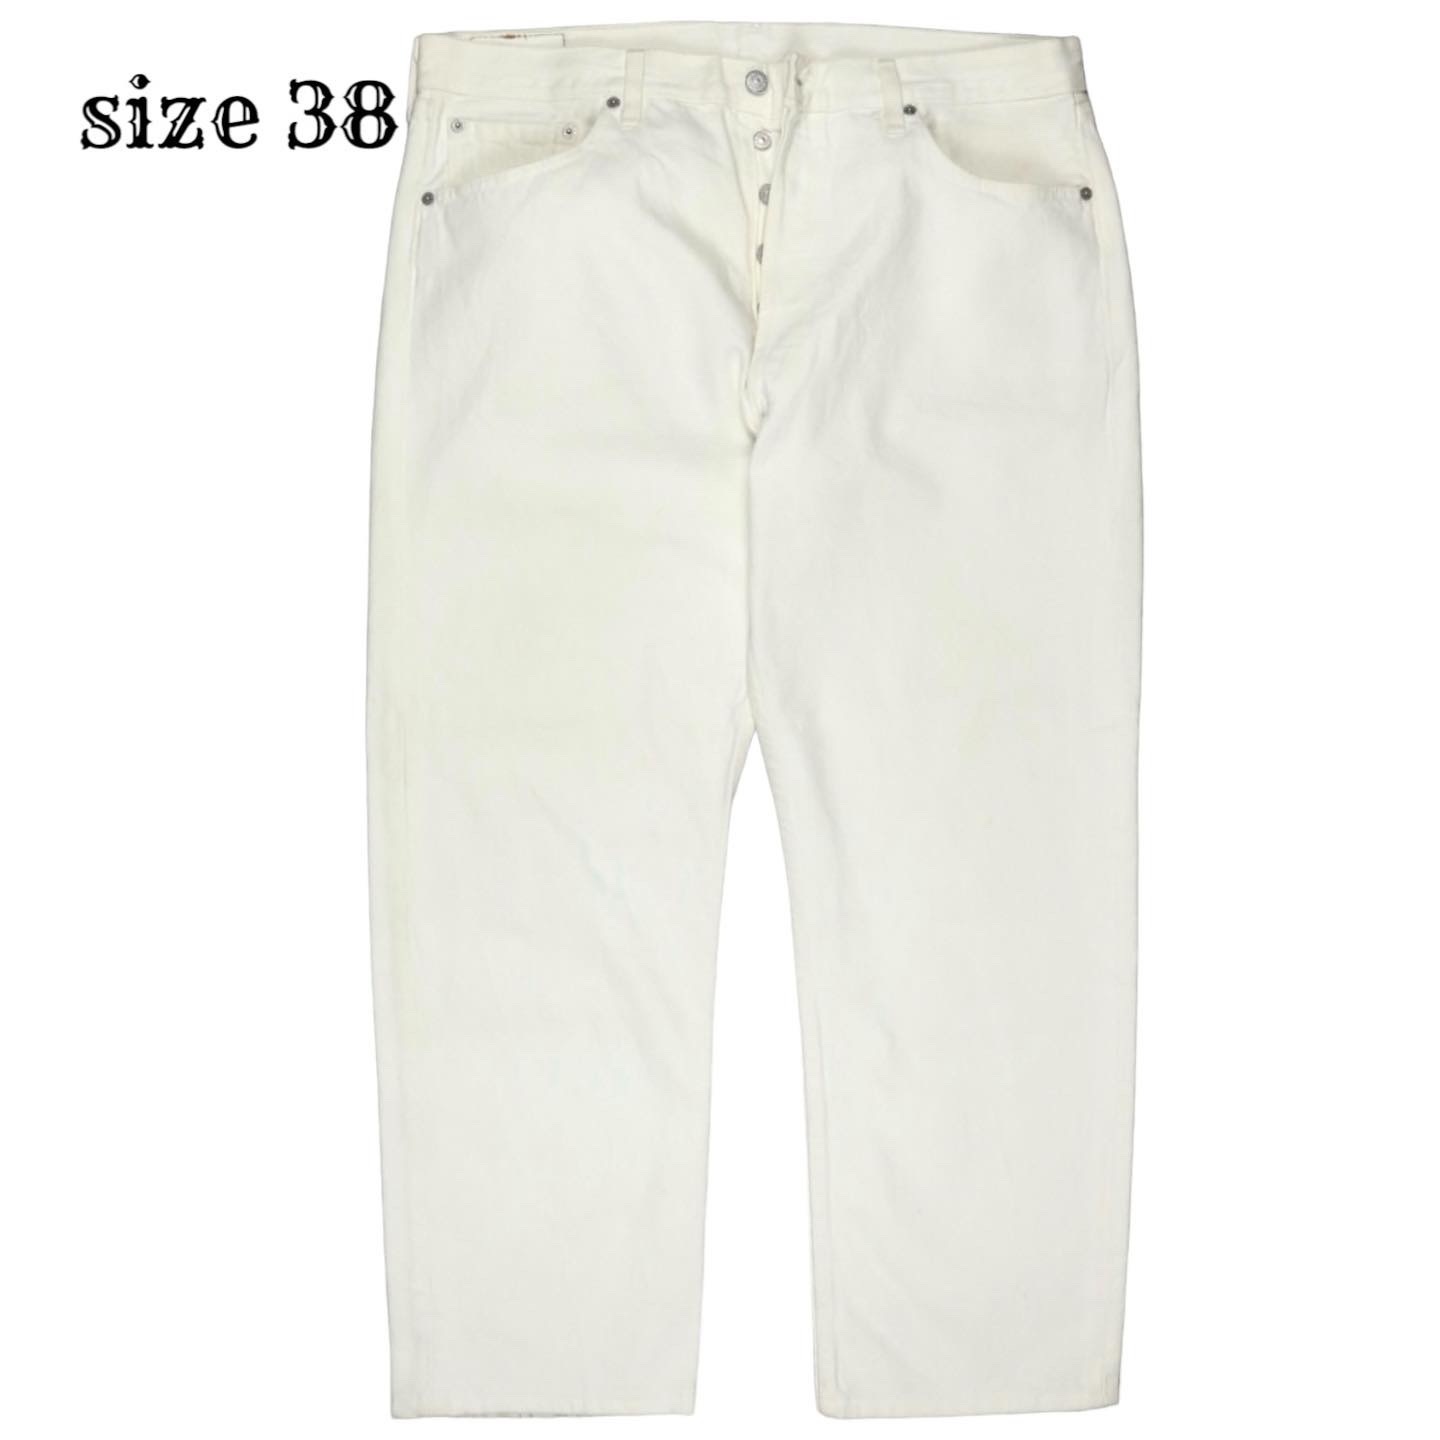 2001 Levi's 501 USA Jeans Size 38